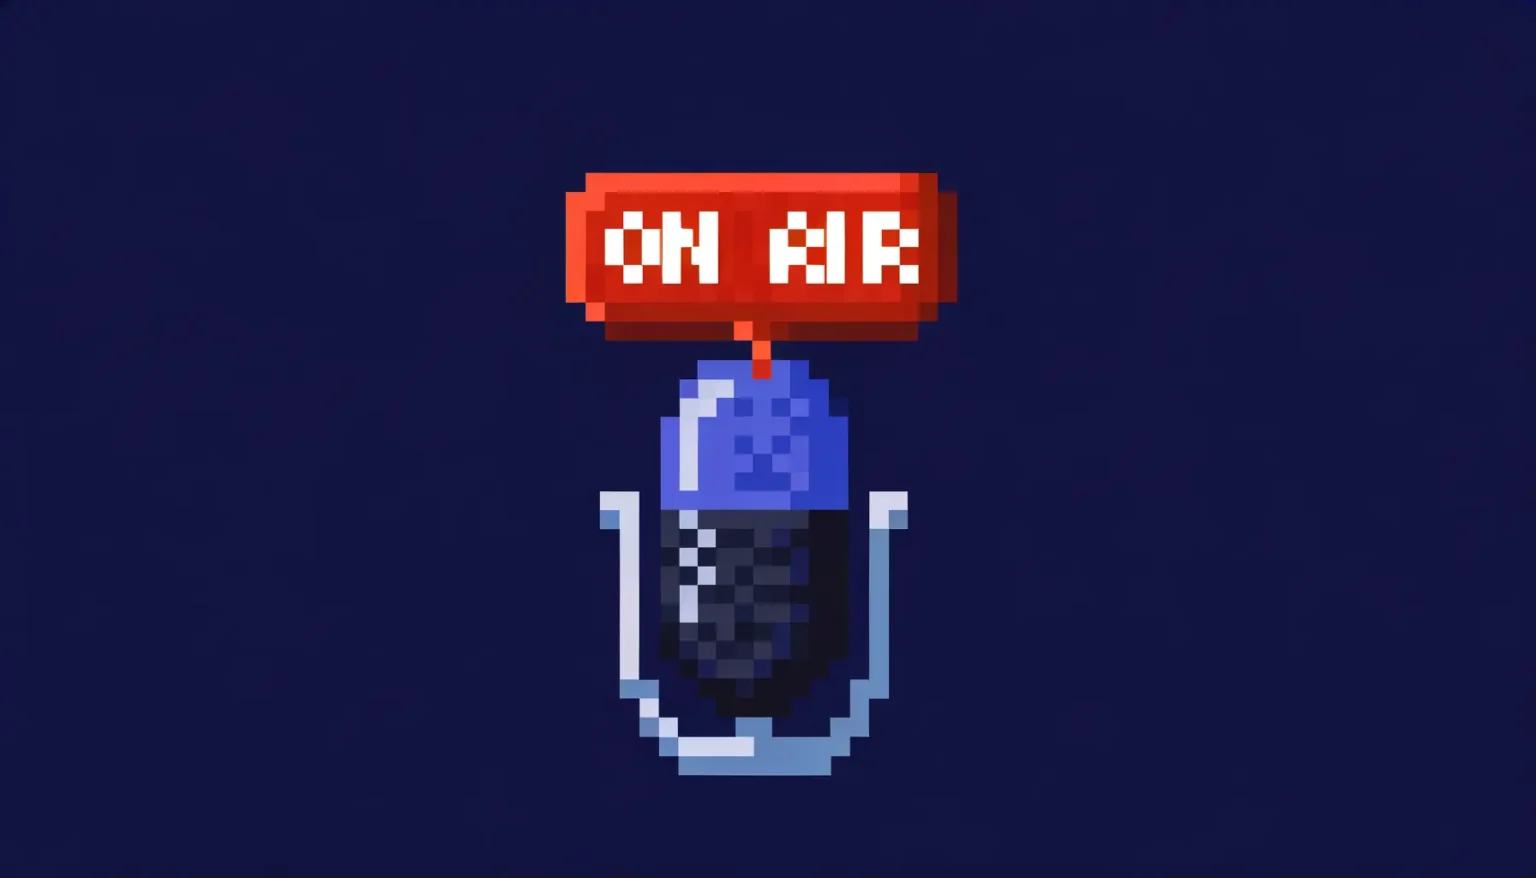 Pixelbild eines Mikrofons mit einem "ON AIR"-Schild darüber auf einem einfarbigen dunkelblauen Hintergrund.